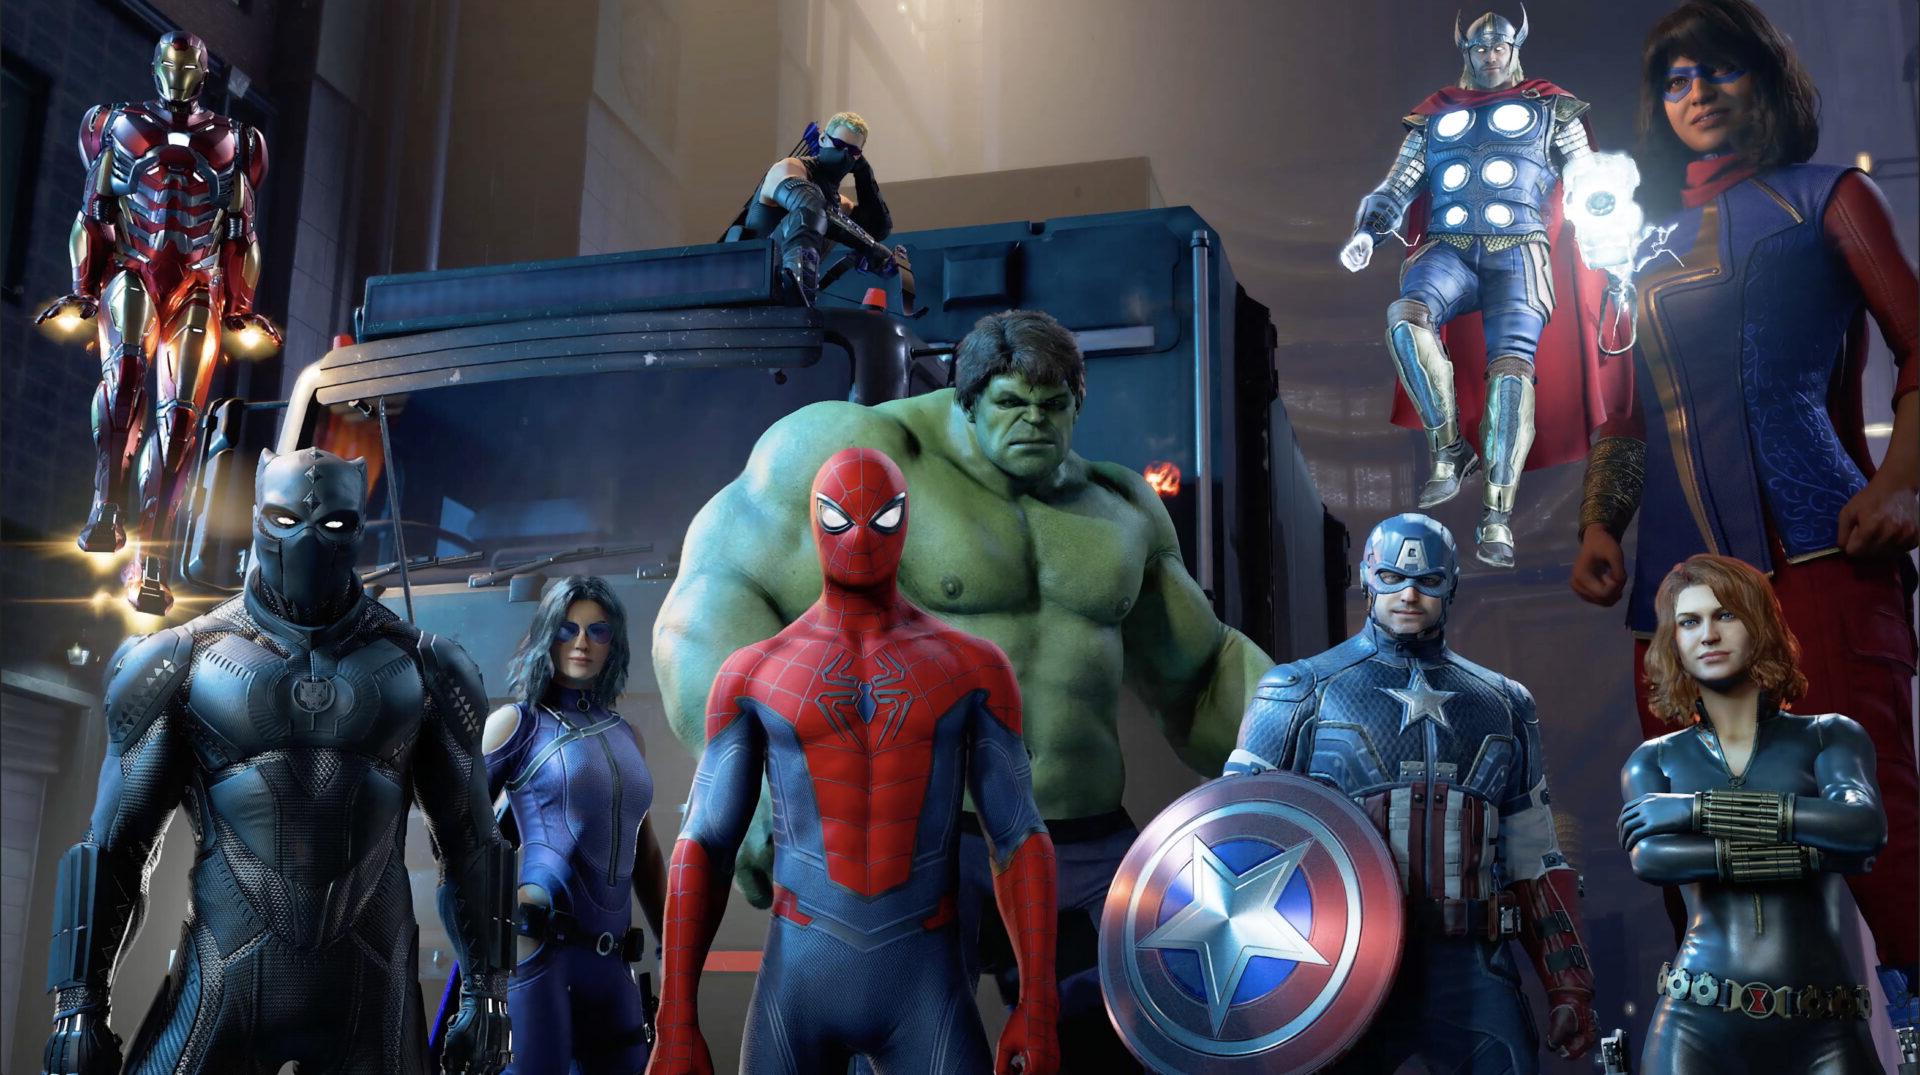 Marvel's Avengers 2k21 Wallpapers